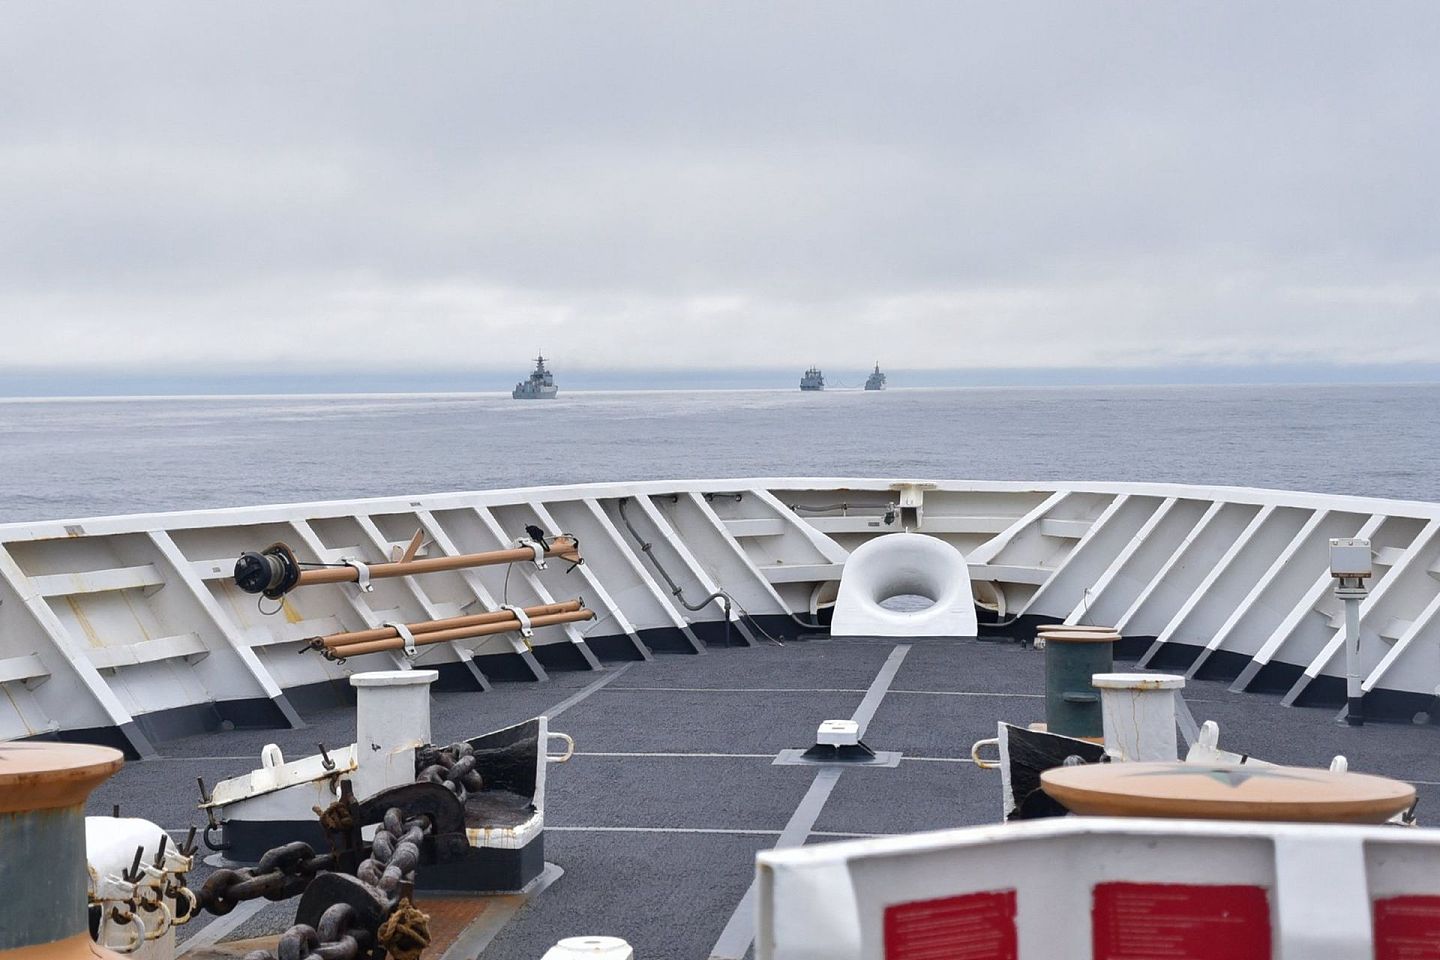 在这张美国海岸警卫队拍摄的照片中，外界至少可以发现三艘中国军舰。这种情况对于美方并不多见。幸而美方坚称中方舰艇“无害通过”，于是此案也随即告一段落。（微博@寰亚SYHP）